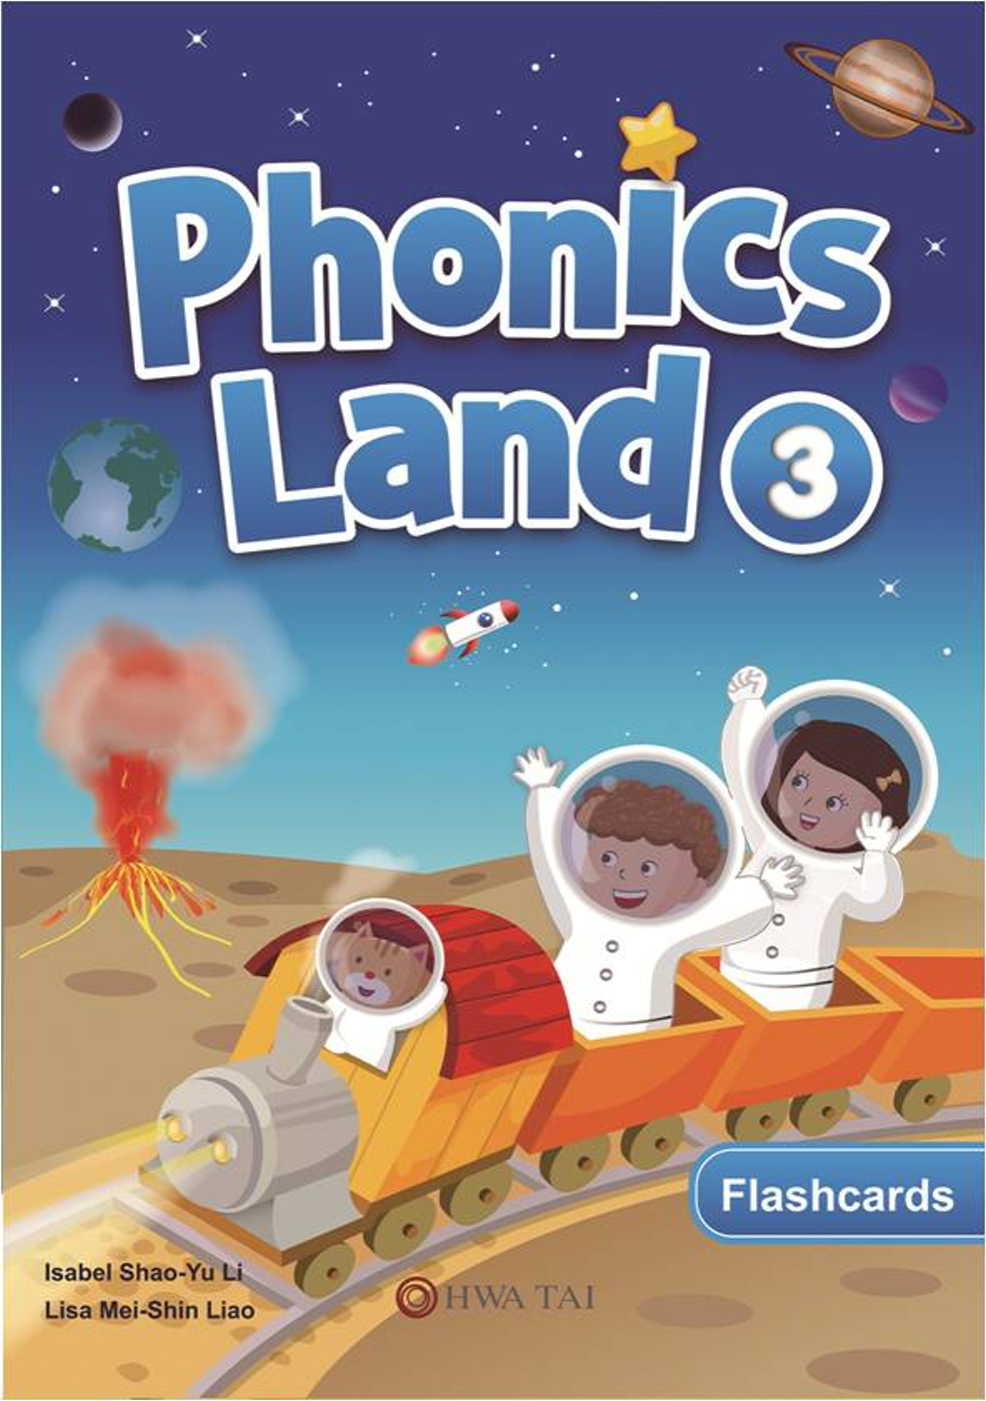 Phonics Land 3 Flashcards